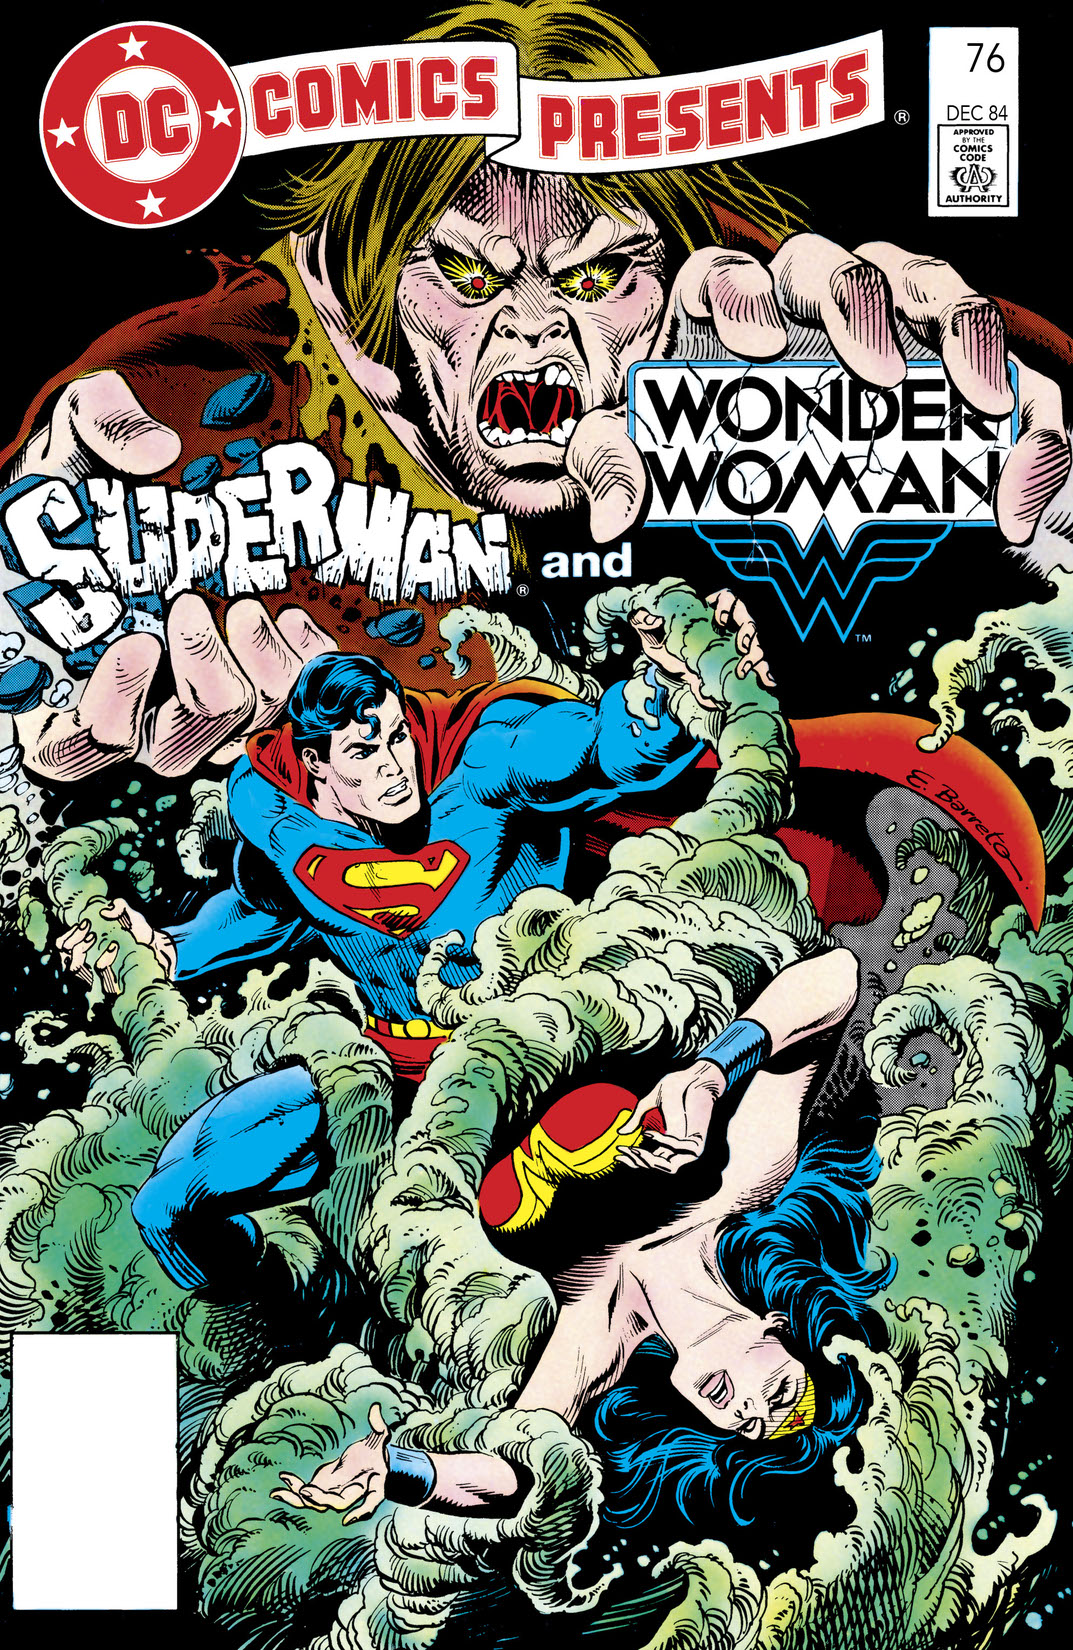 DC Comics Presents (1978-1986) #76 preview images